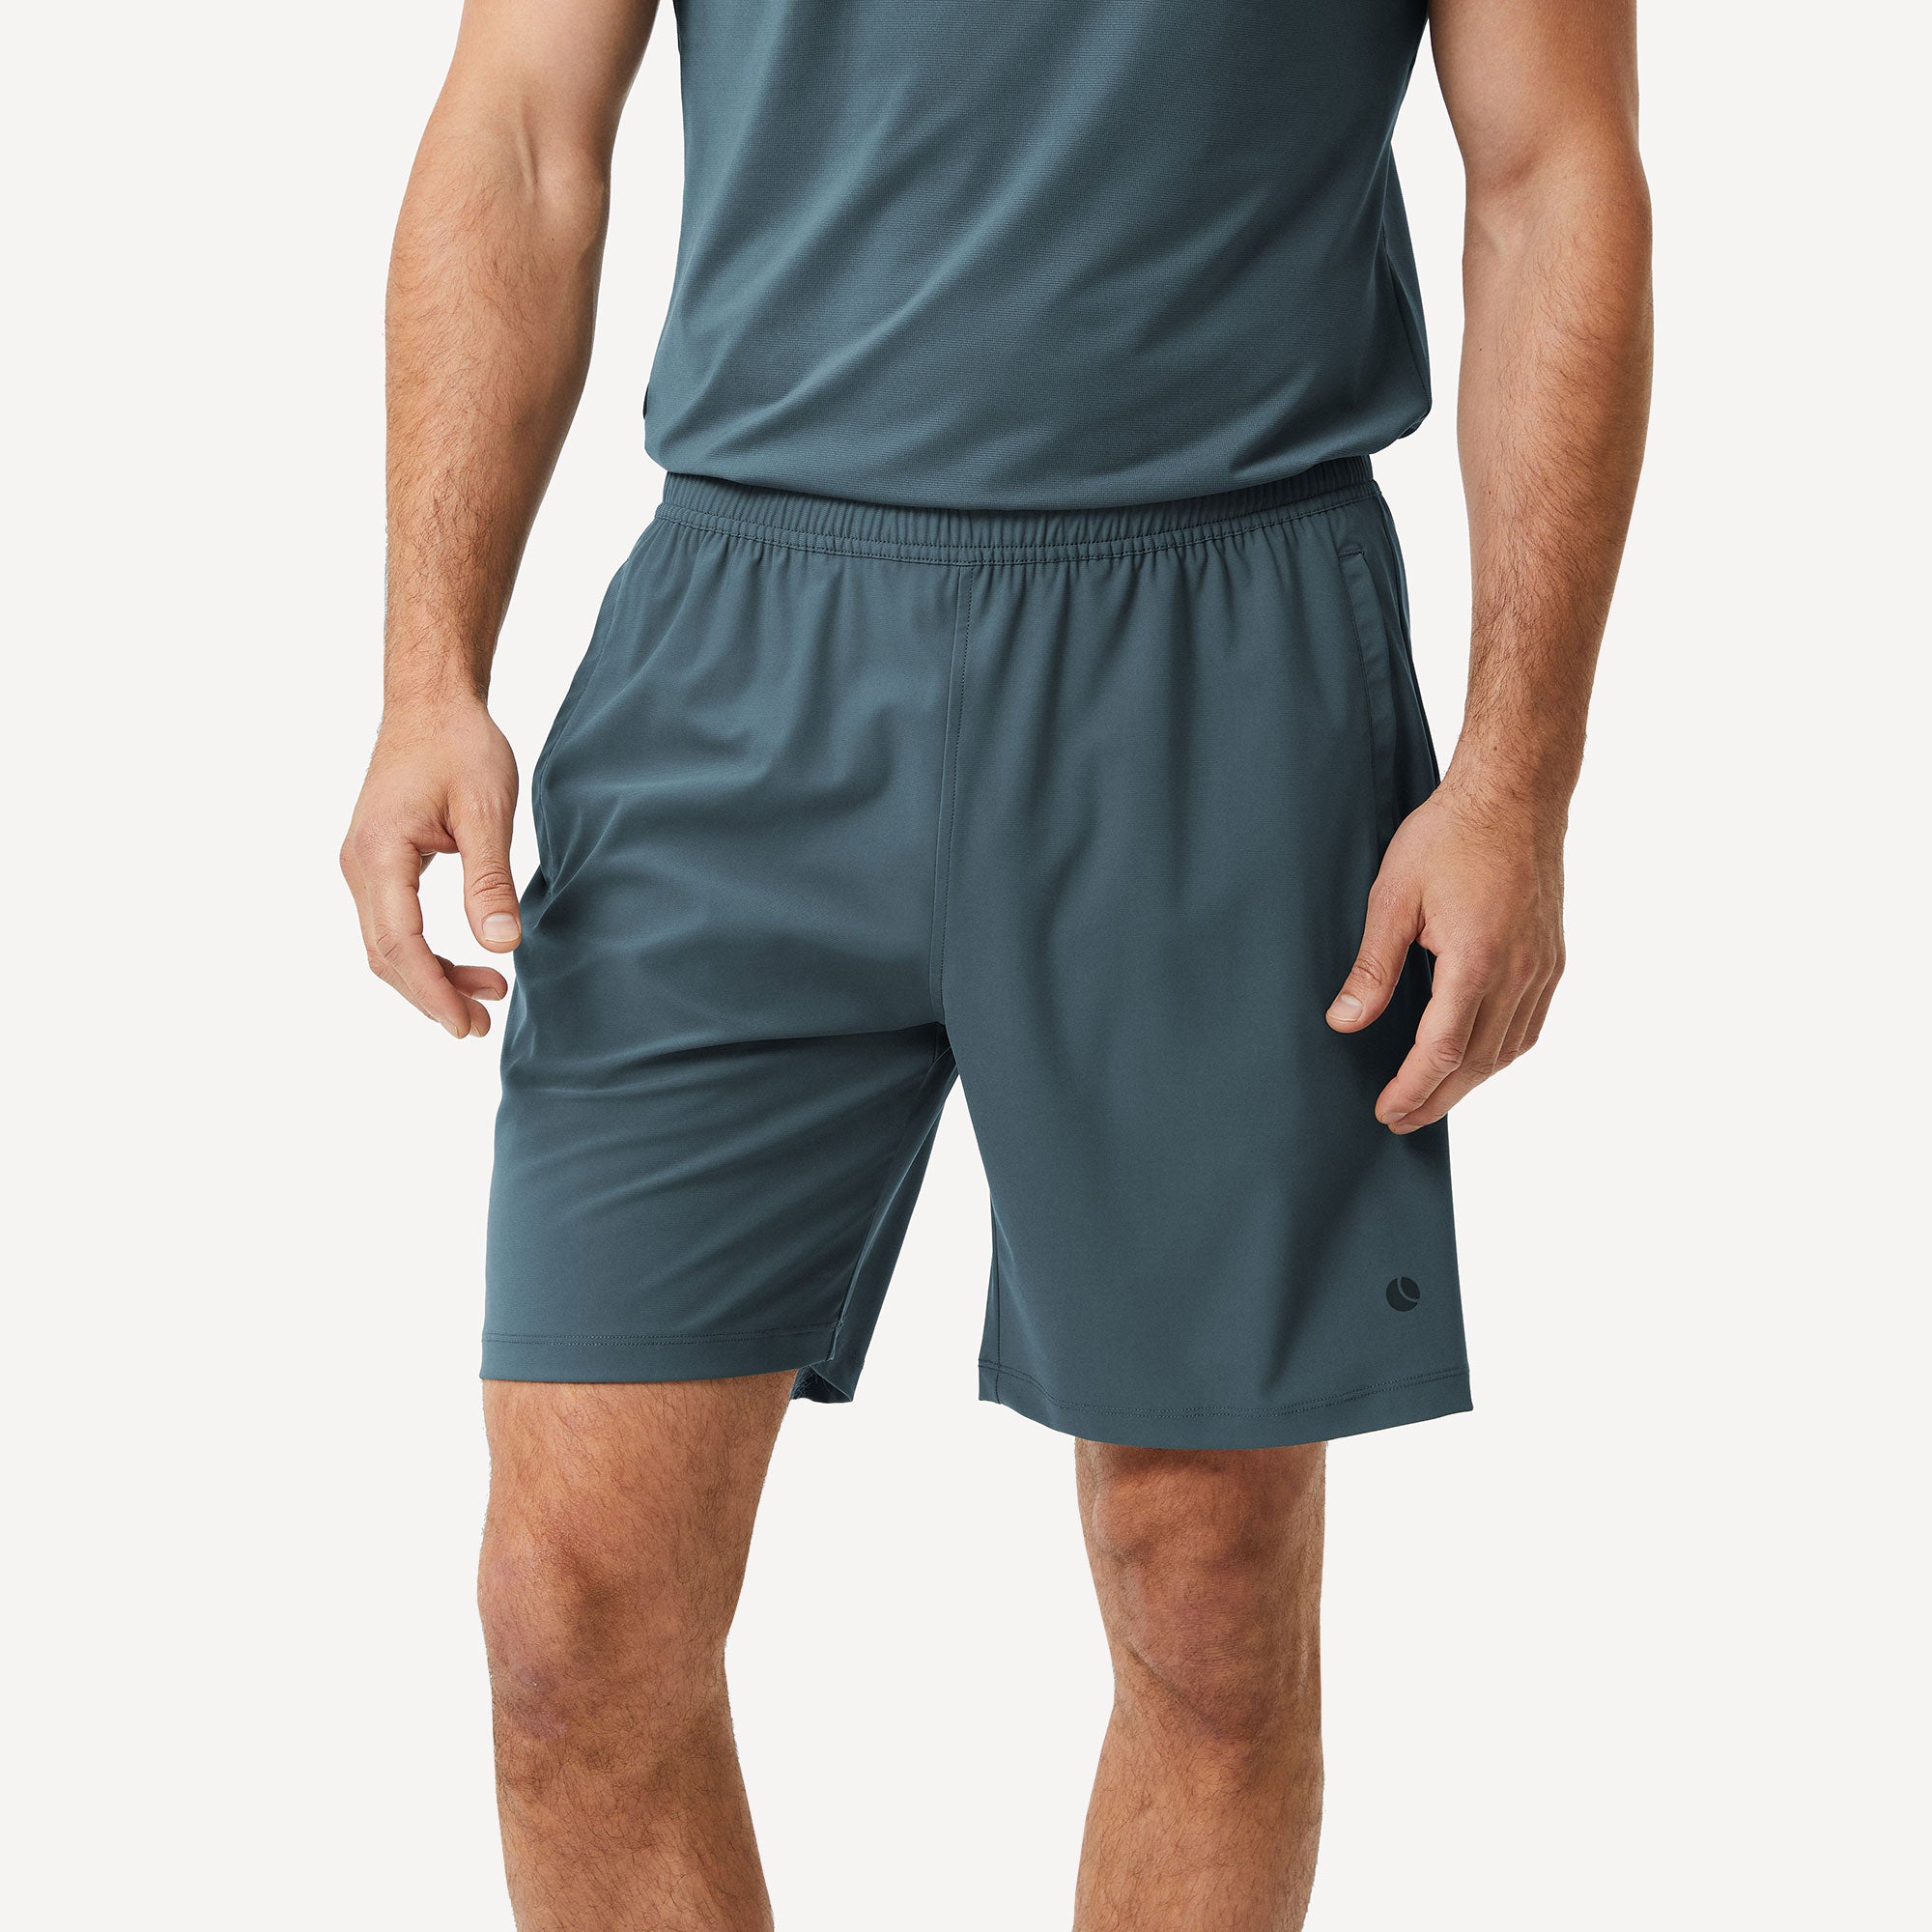 Björn Borg Ace Men's 9-Inch Tennis Shorts - Green (1)